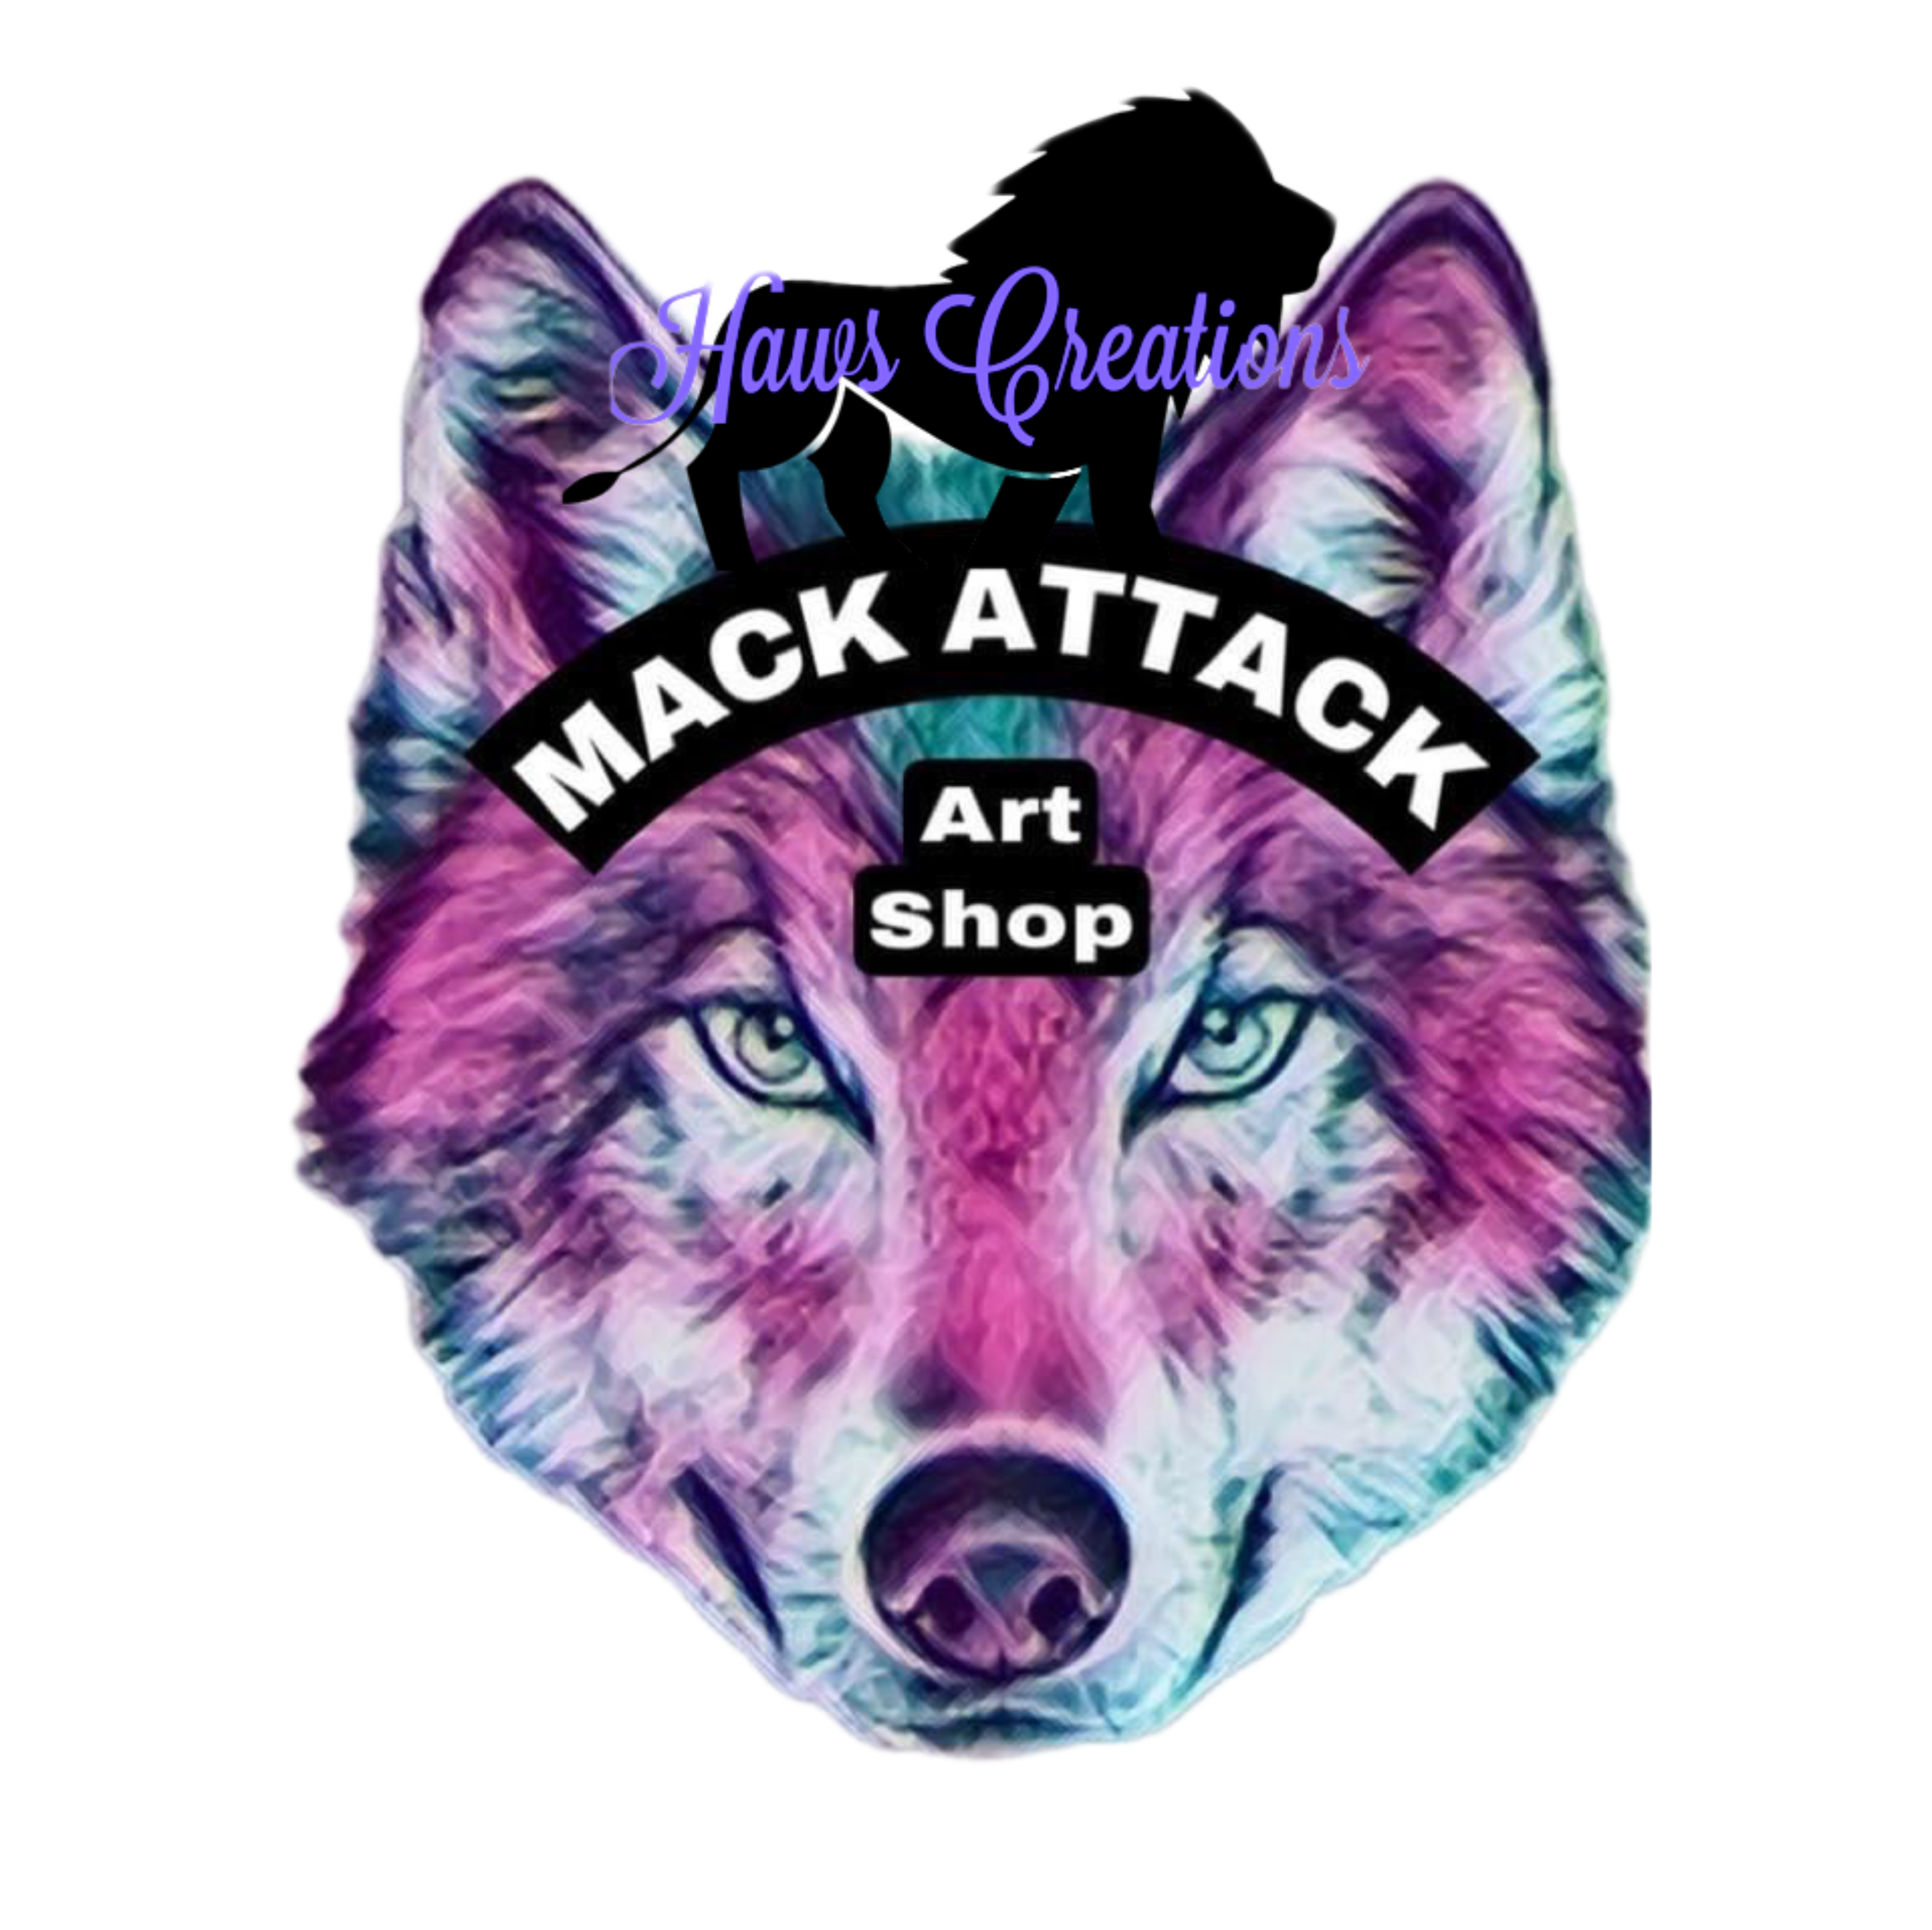 Mack Attack Art Shop